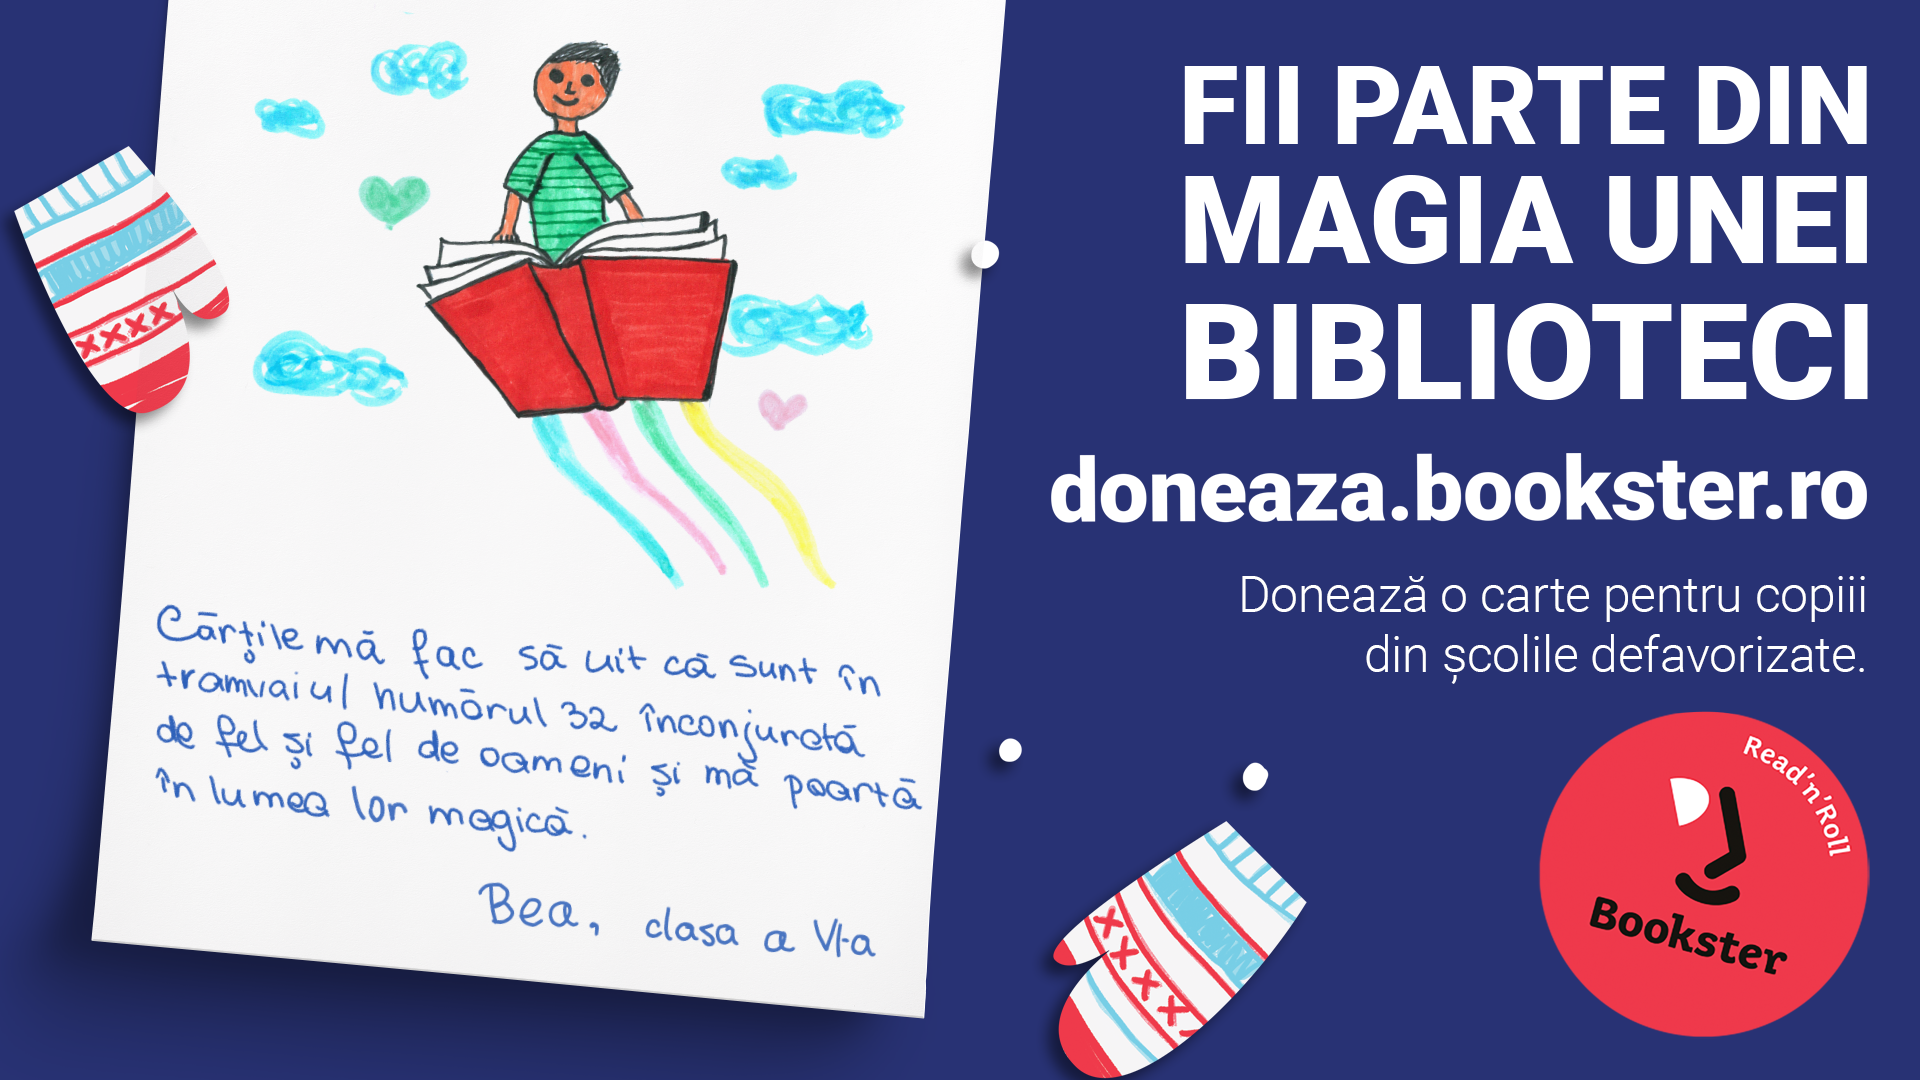 salon novelty revolution Bookster organizează o campanie de donaţii de cărţi pentru copiii din şcoli  aflate în medii vulnerabile